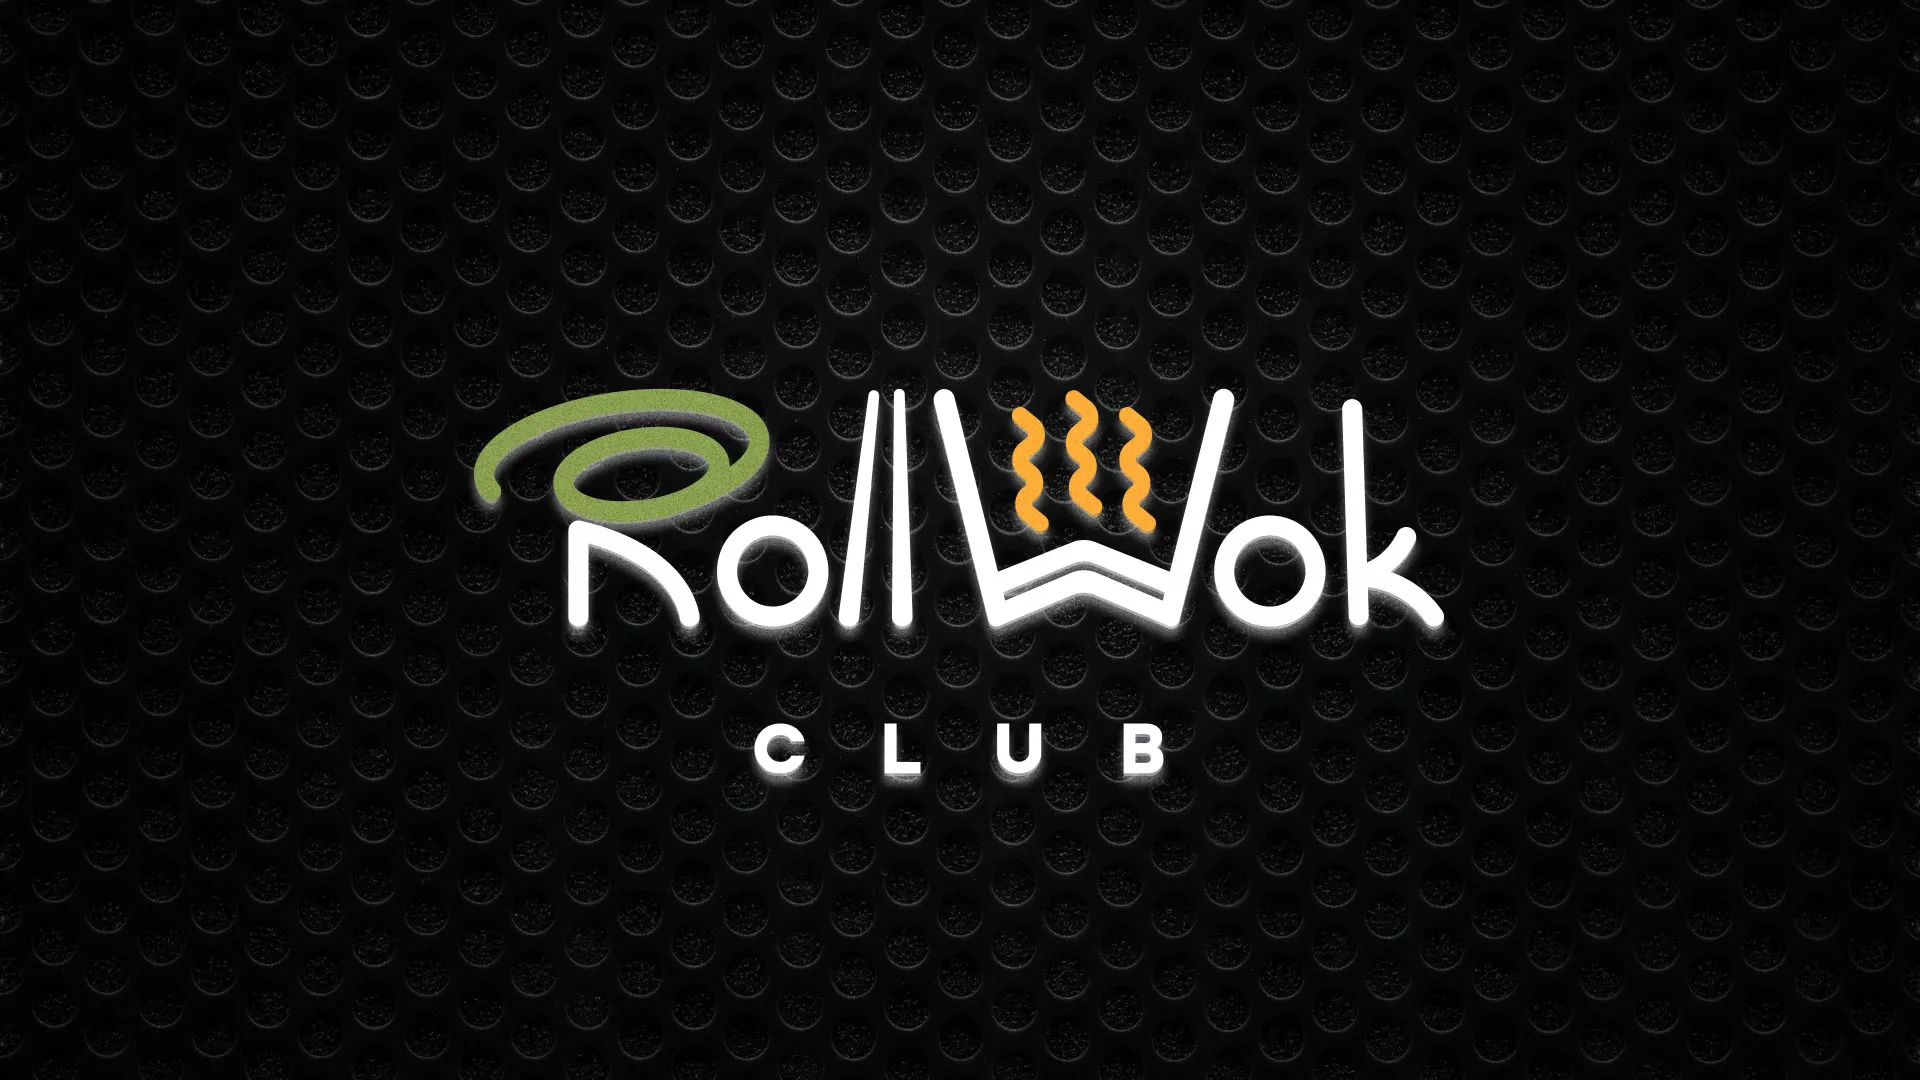 Брендирование торговых точек суши-бара «Roll Wok Club» в Старой Руссе